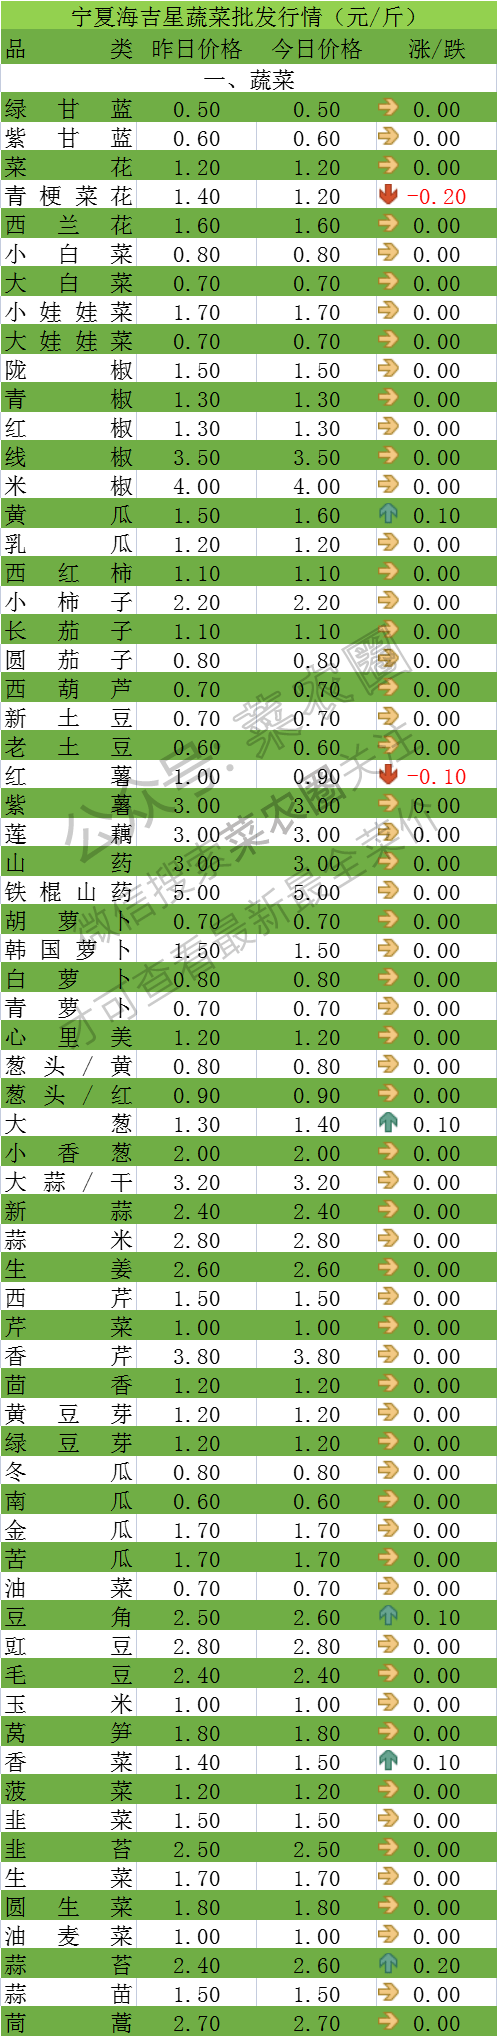 2021年9月29日北京新发地,山东寿光,云南,河北石家庄今日蔬菜价格行情一览表